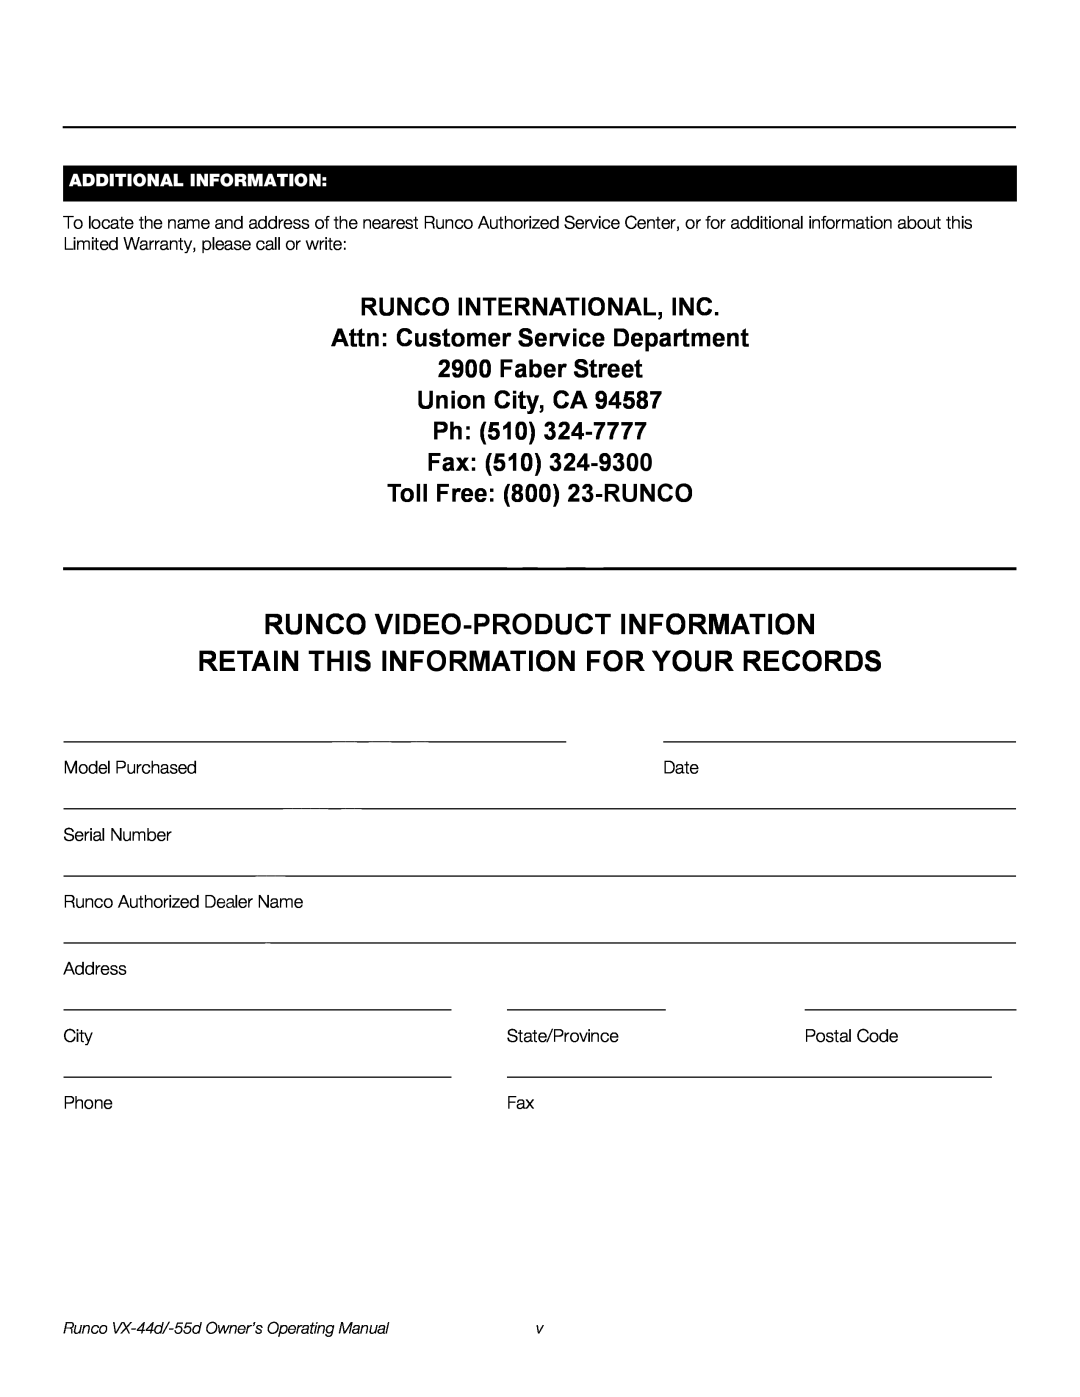 Runco VX-55D, VX-44D Additional Information, Runco Video-Product Information, Retain This Information For Your Records 